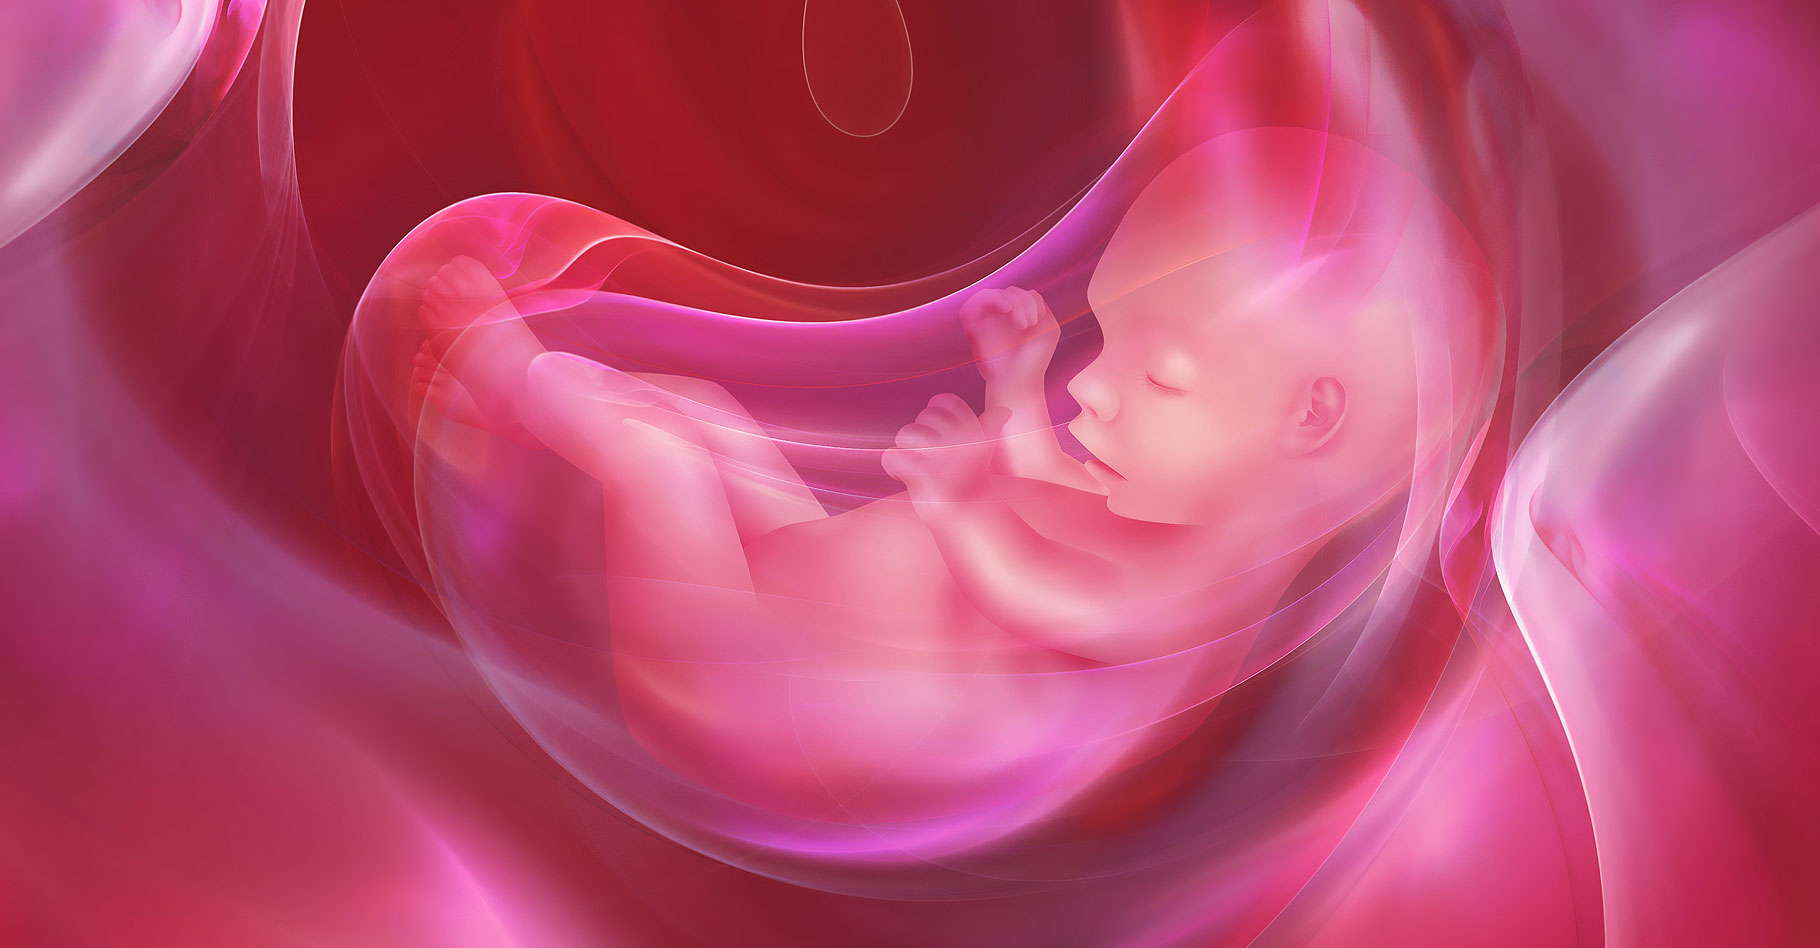 Le placenta : rôle, constitution et anomalies (placenta praevia)